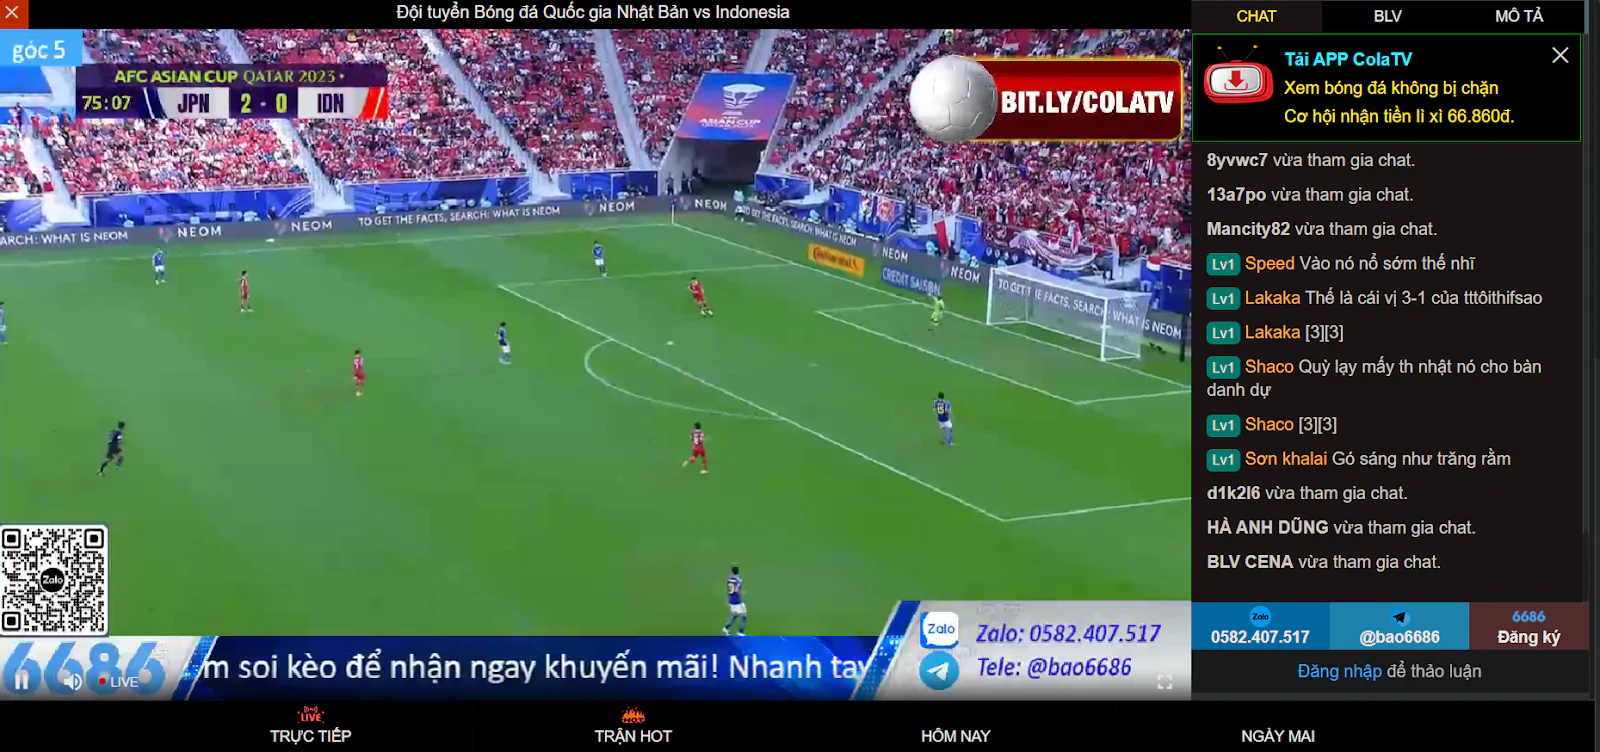 Xoilac TV - Web phát sóng bóng đá trực tuyến uy tín và miễn phí